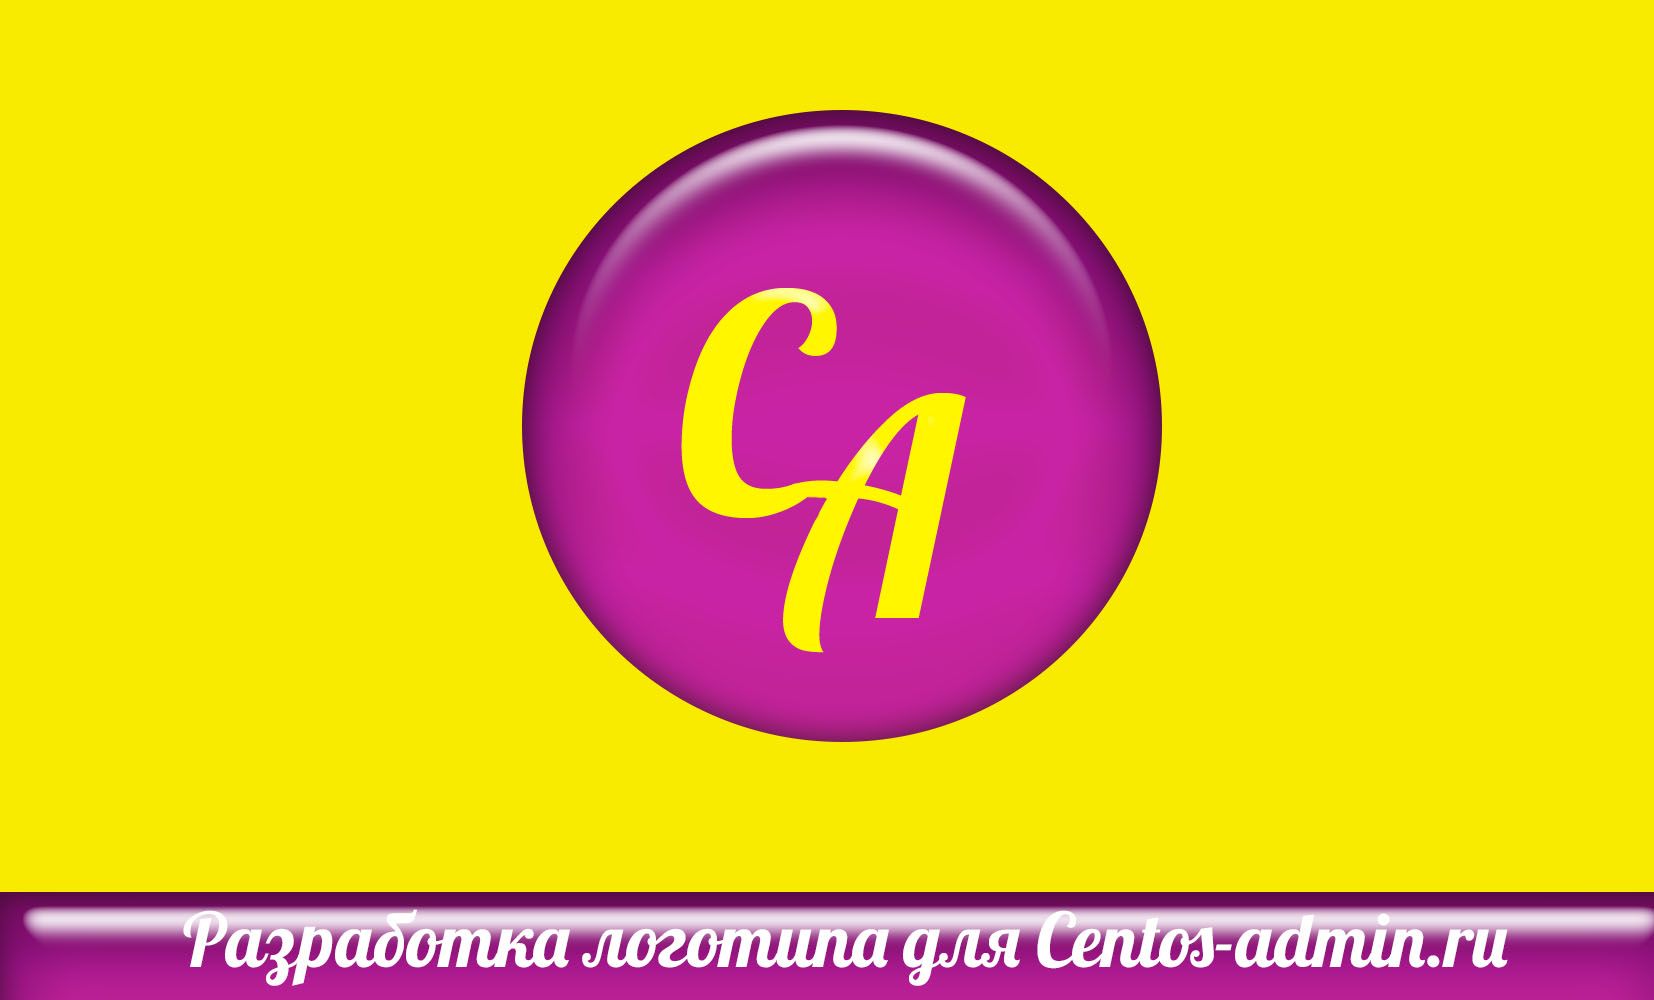 Логотип для компании Centos-admin.ru - дизайнер optimuzzy